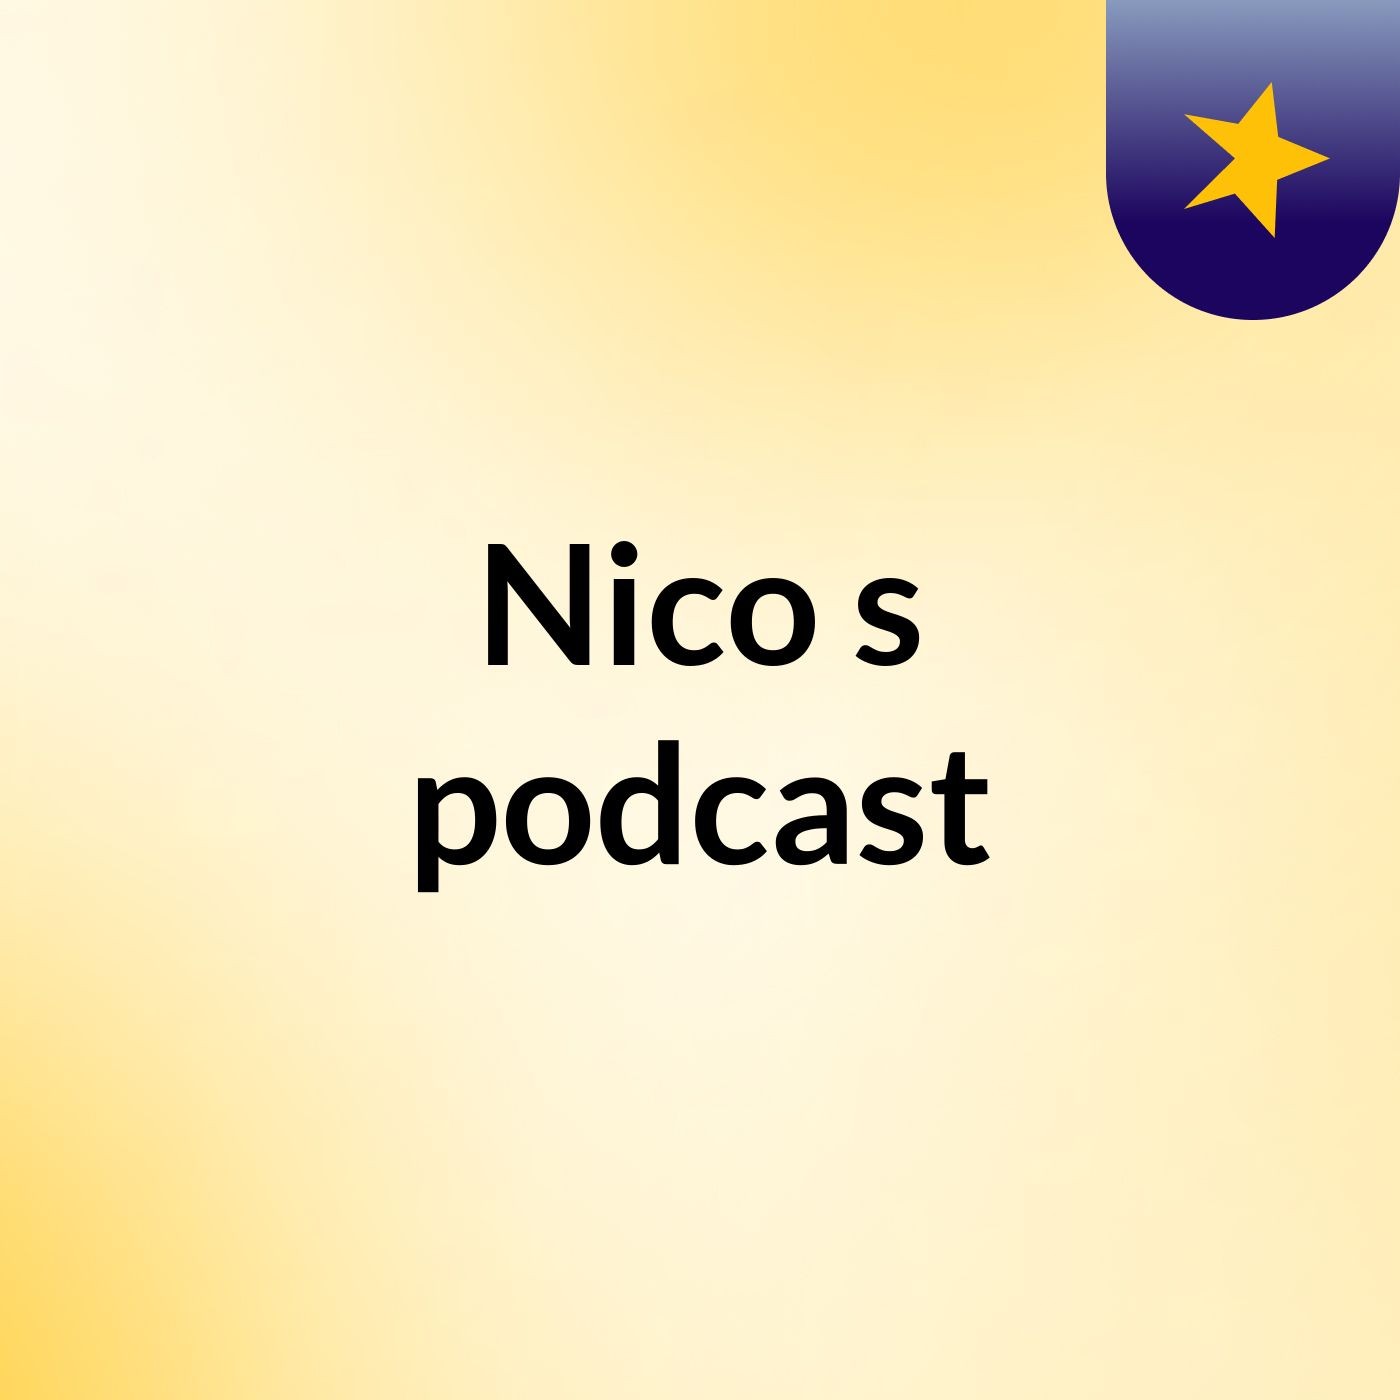 Nico's podcast